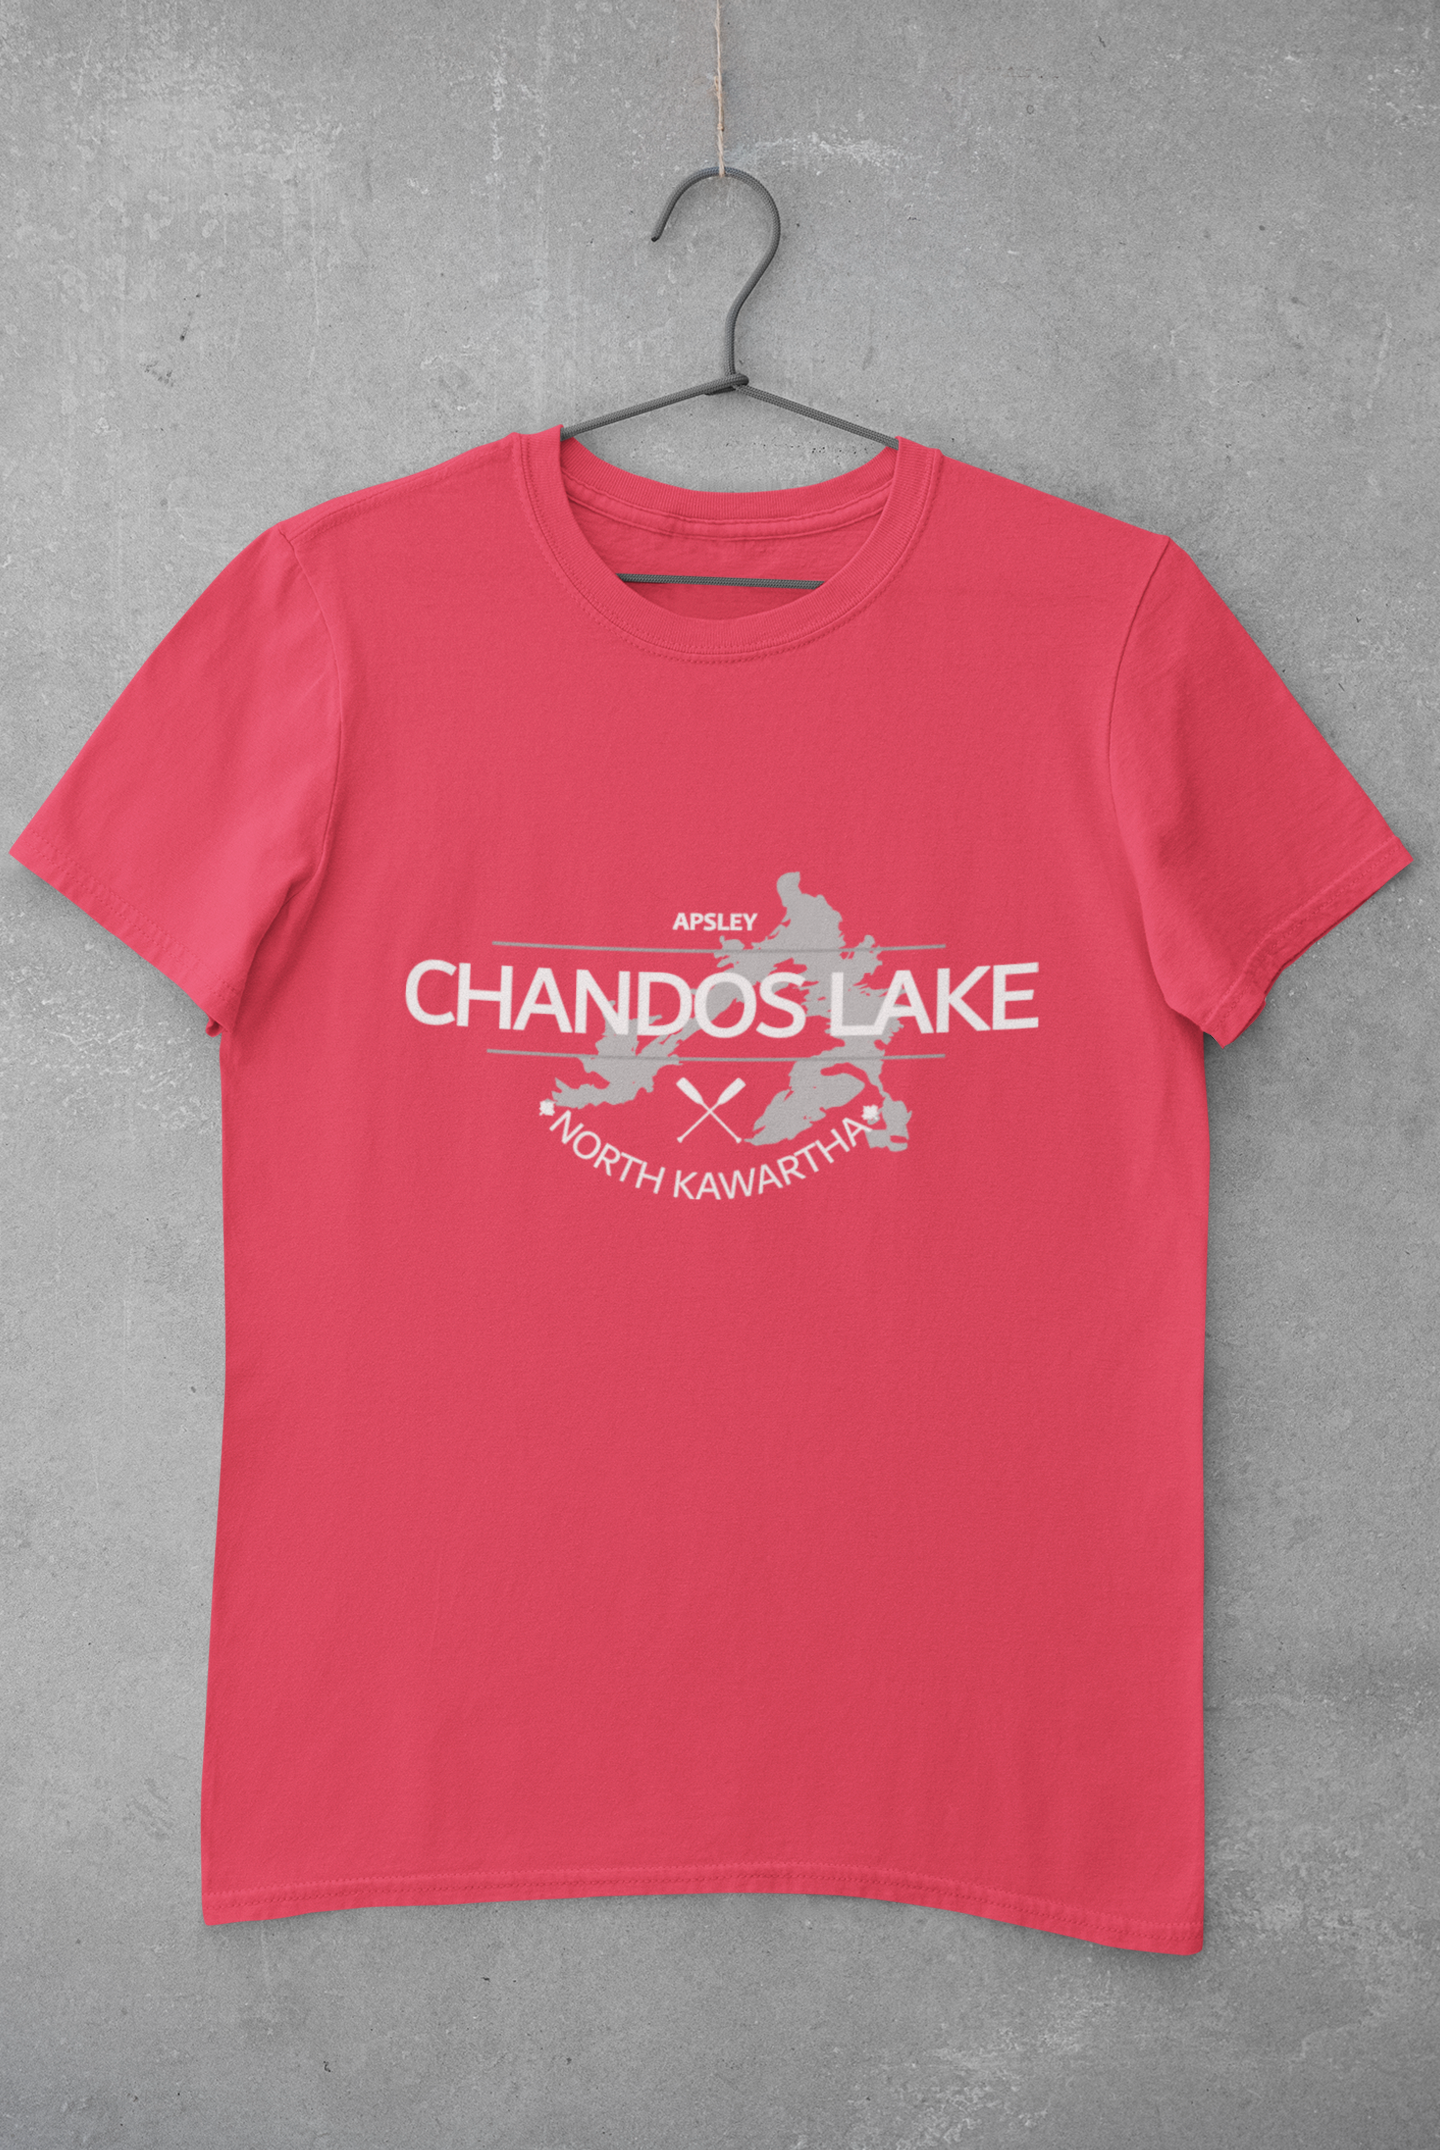 Chandos Lake Youth T-Shirt